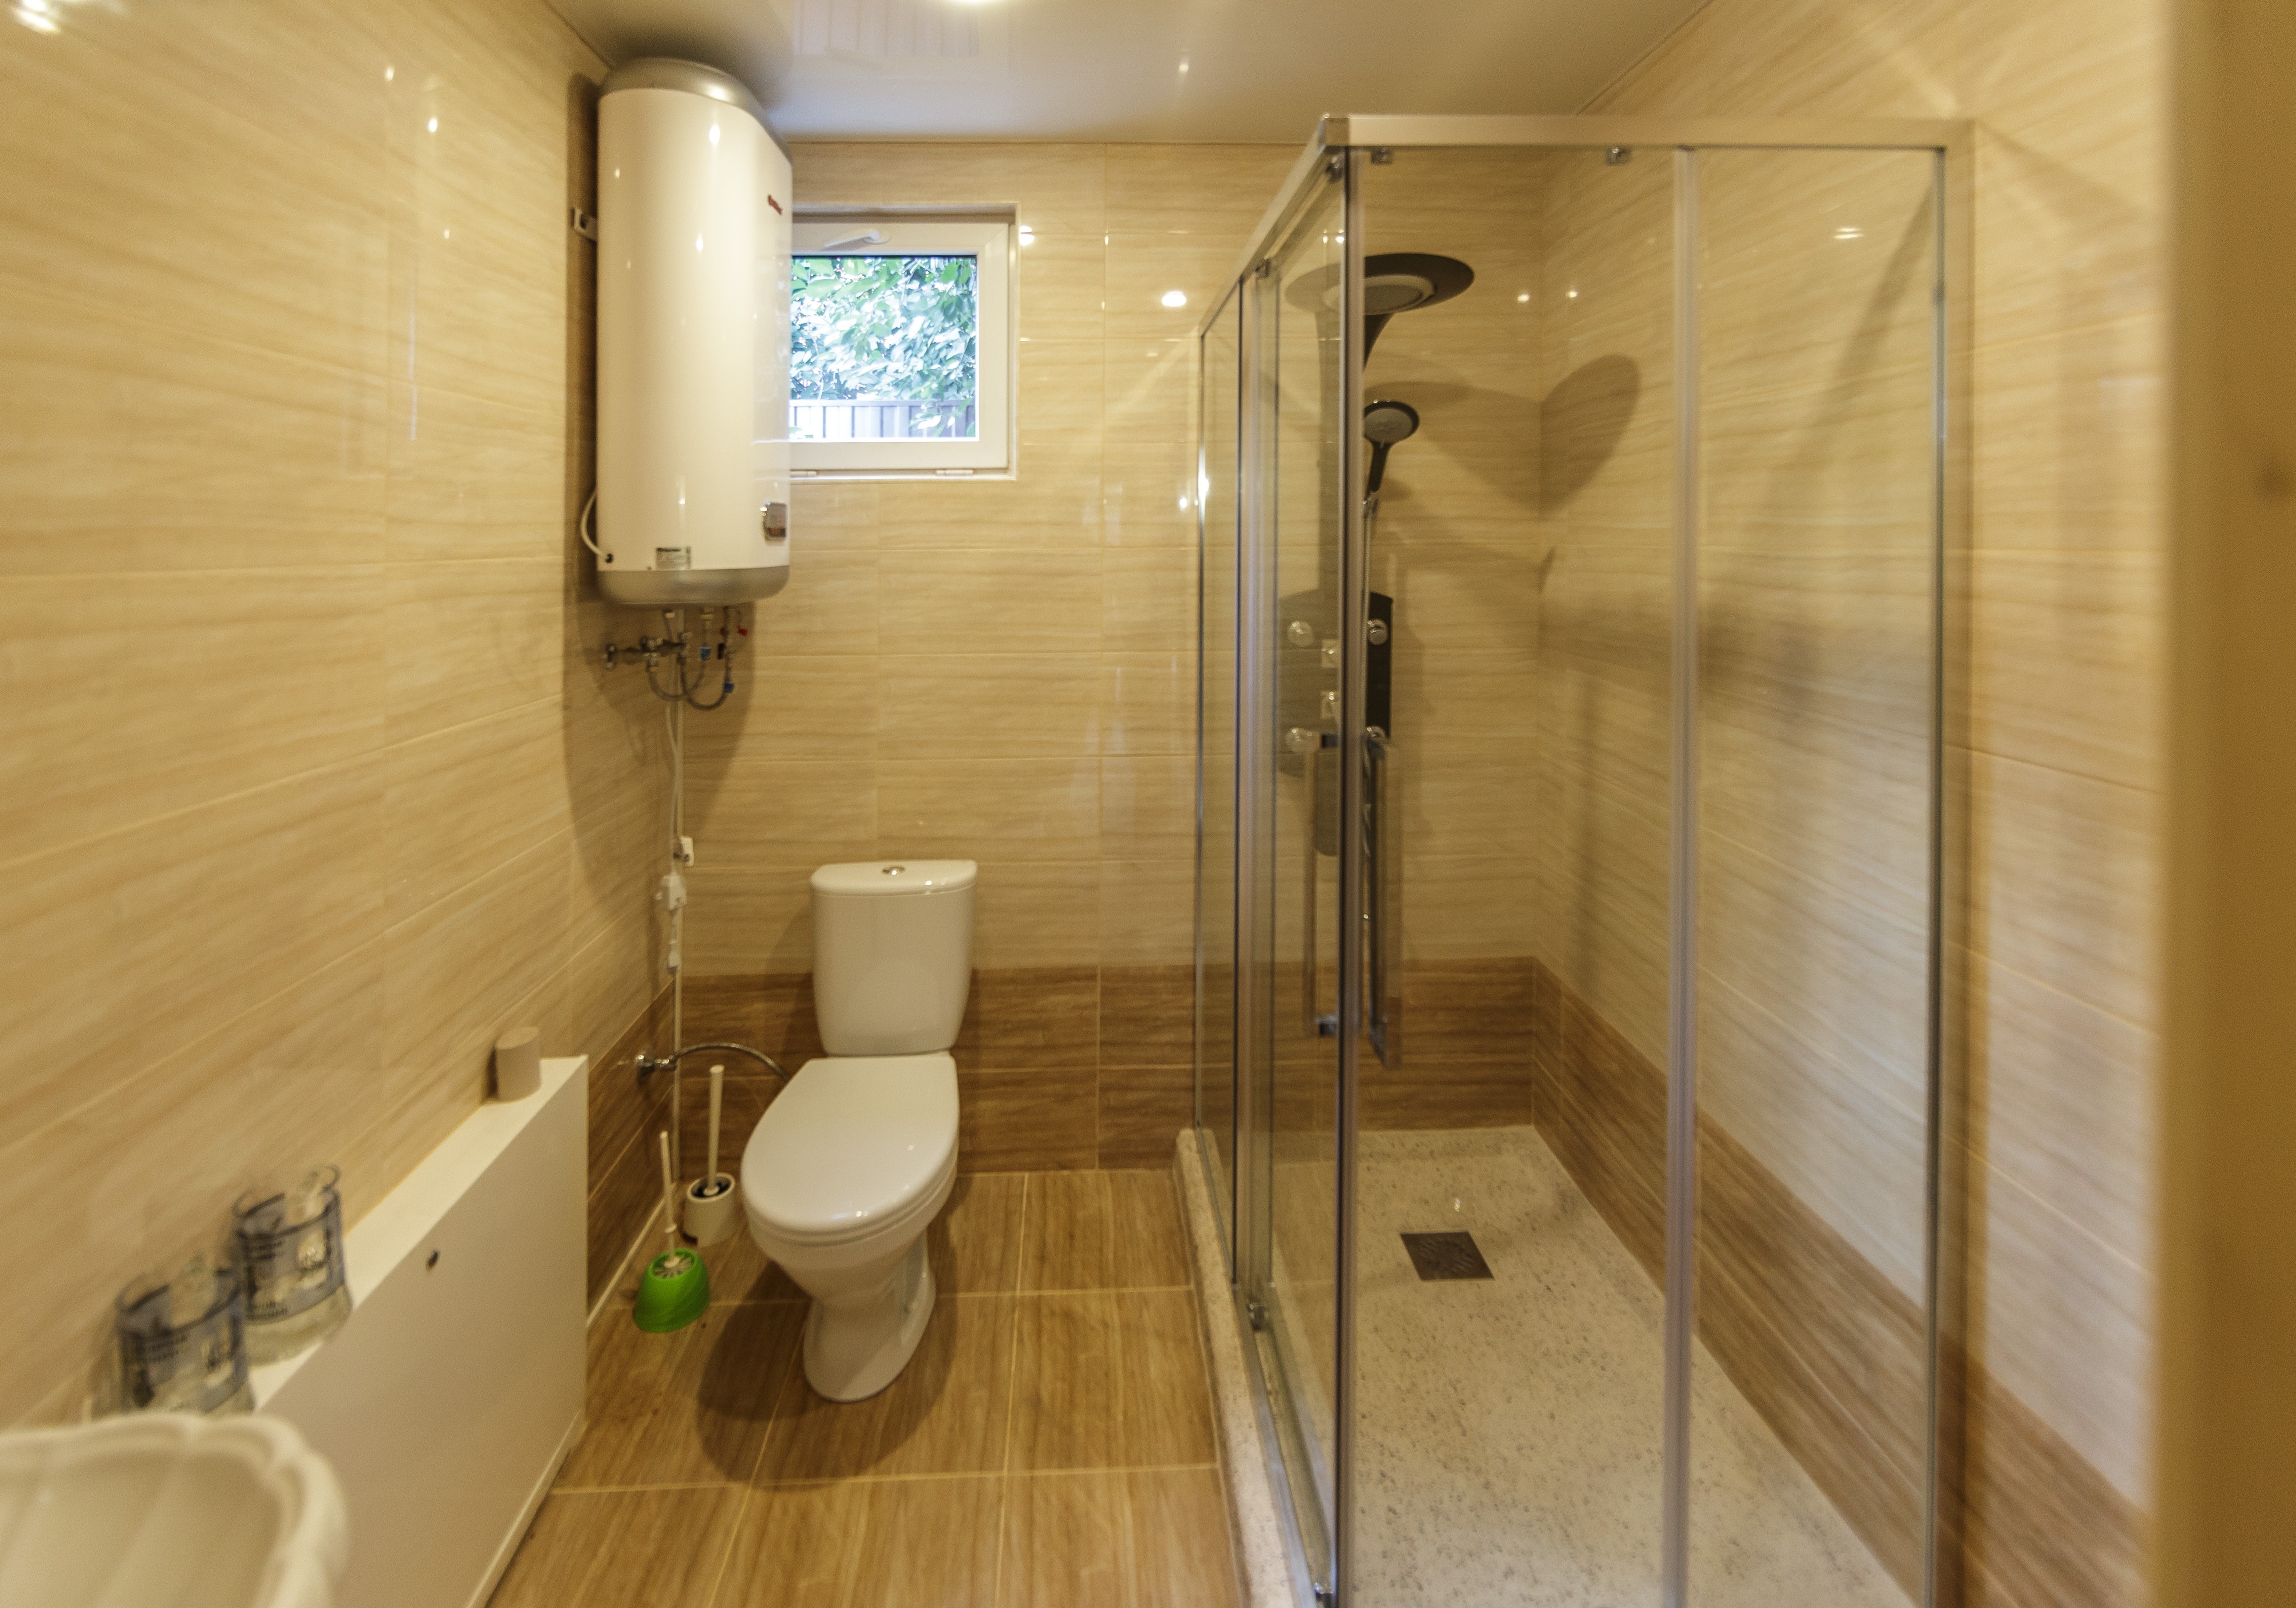 Вентиляция ванной в частном доме: Вентиляция в санузле частного дома. Варианты решений